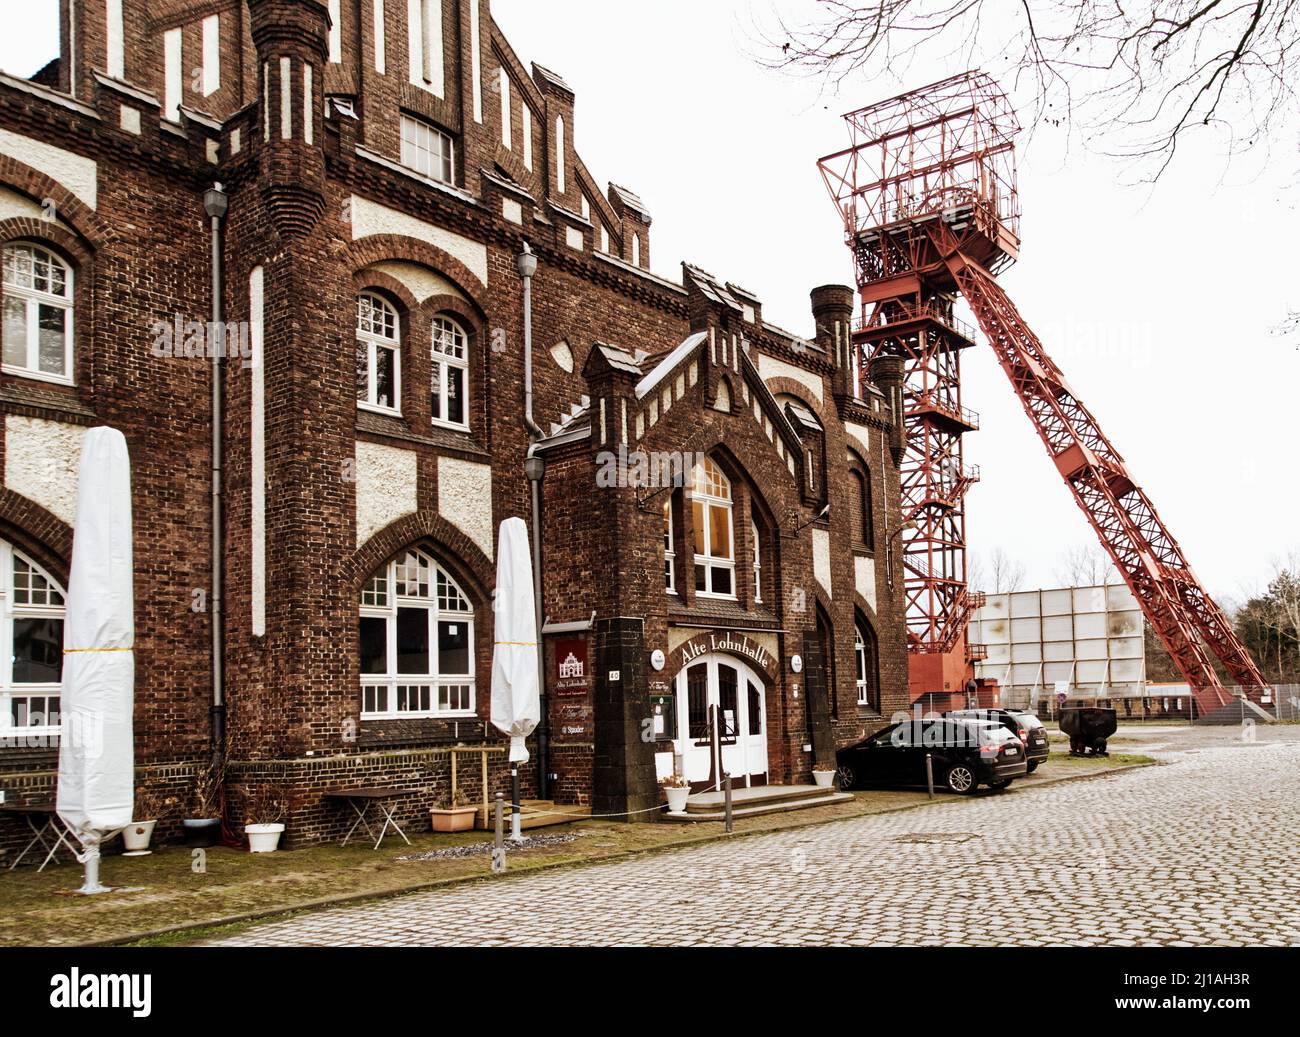 Essen, 8. Februar 2022: Das Hotel 'Alte Lohnhalle' in Essen, das in einem renovierten ehemaligen Bergwerk untergebracht ist Stockfoto